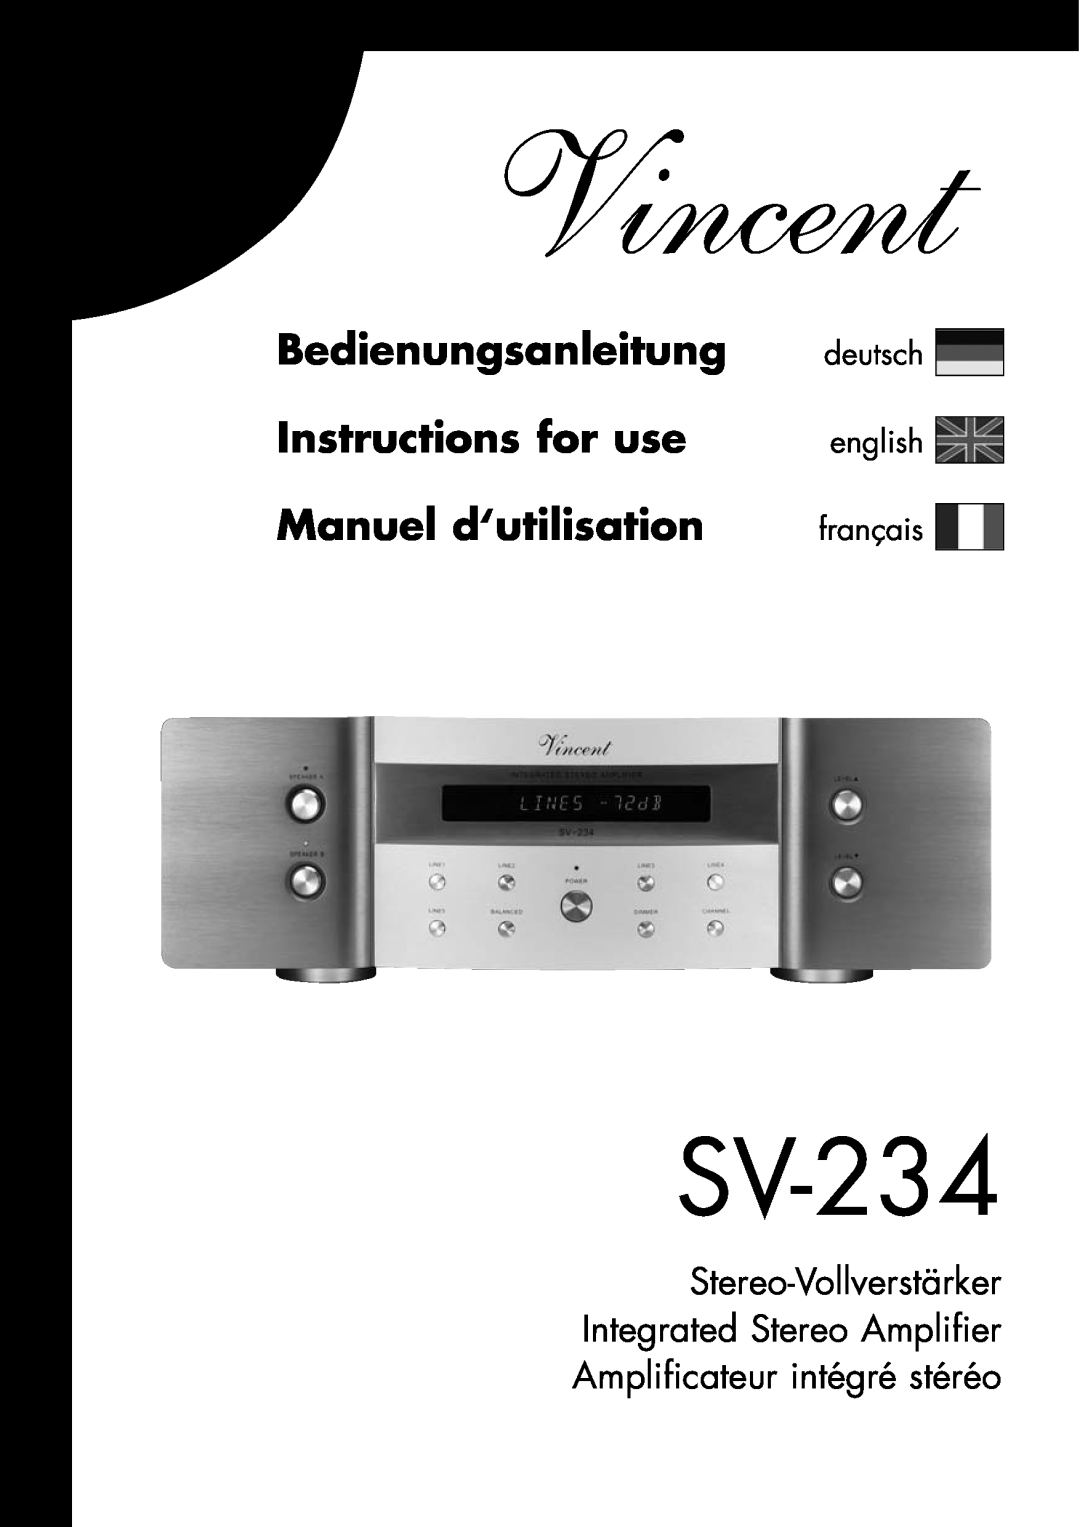 Vincent Audio SV-234 manuel dutilisation Vincent, Bedienungsanleitung Instructions for use, Manuel d‘utilisation 